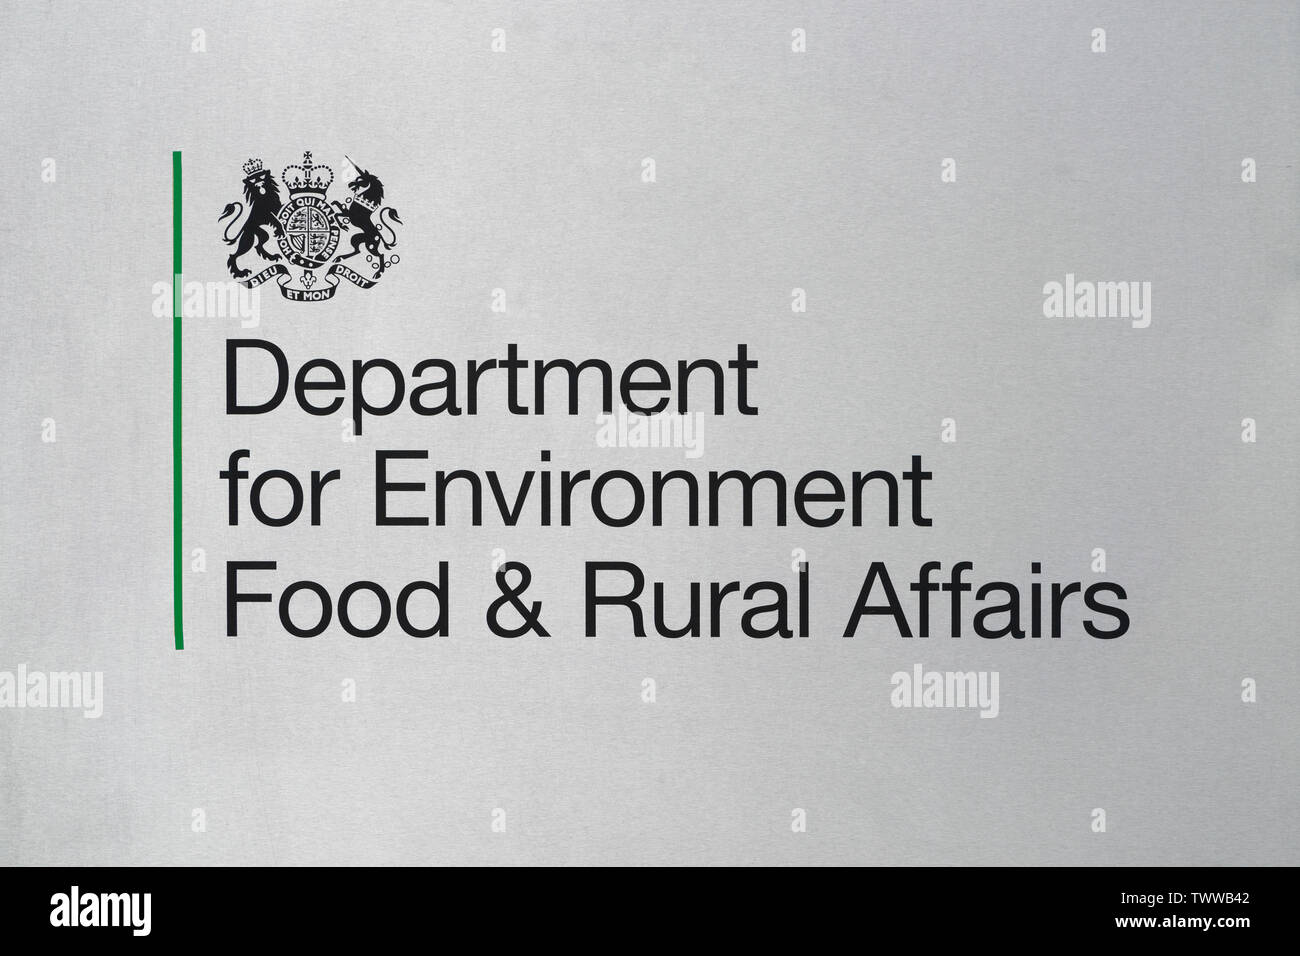 Segnaletica per il Dipartimento per l'ambiente, l'alimentazione e gli affari rurali edificio situato in Smith Square a Londra, Regno Unito. Foto Stock